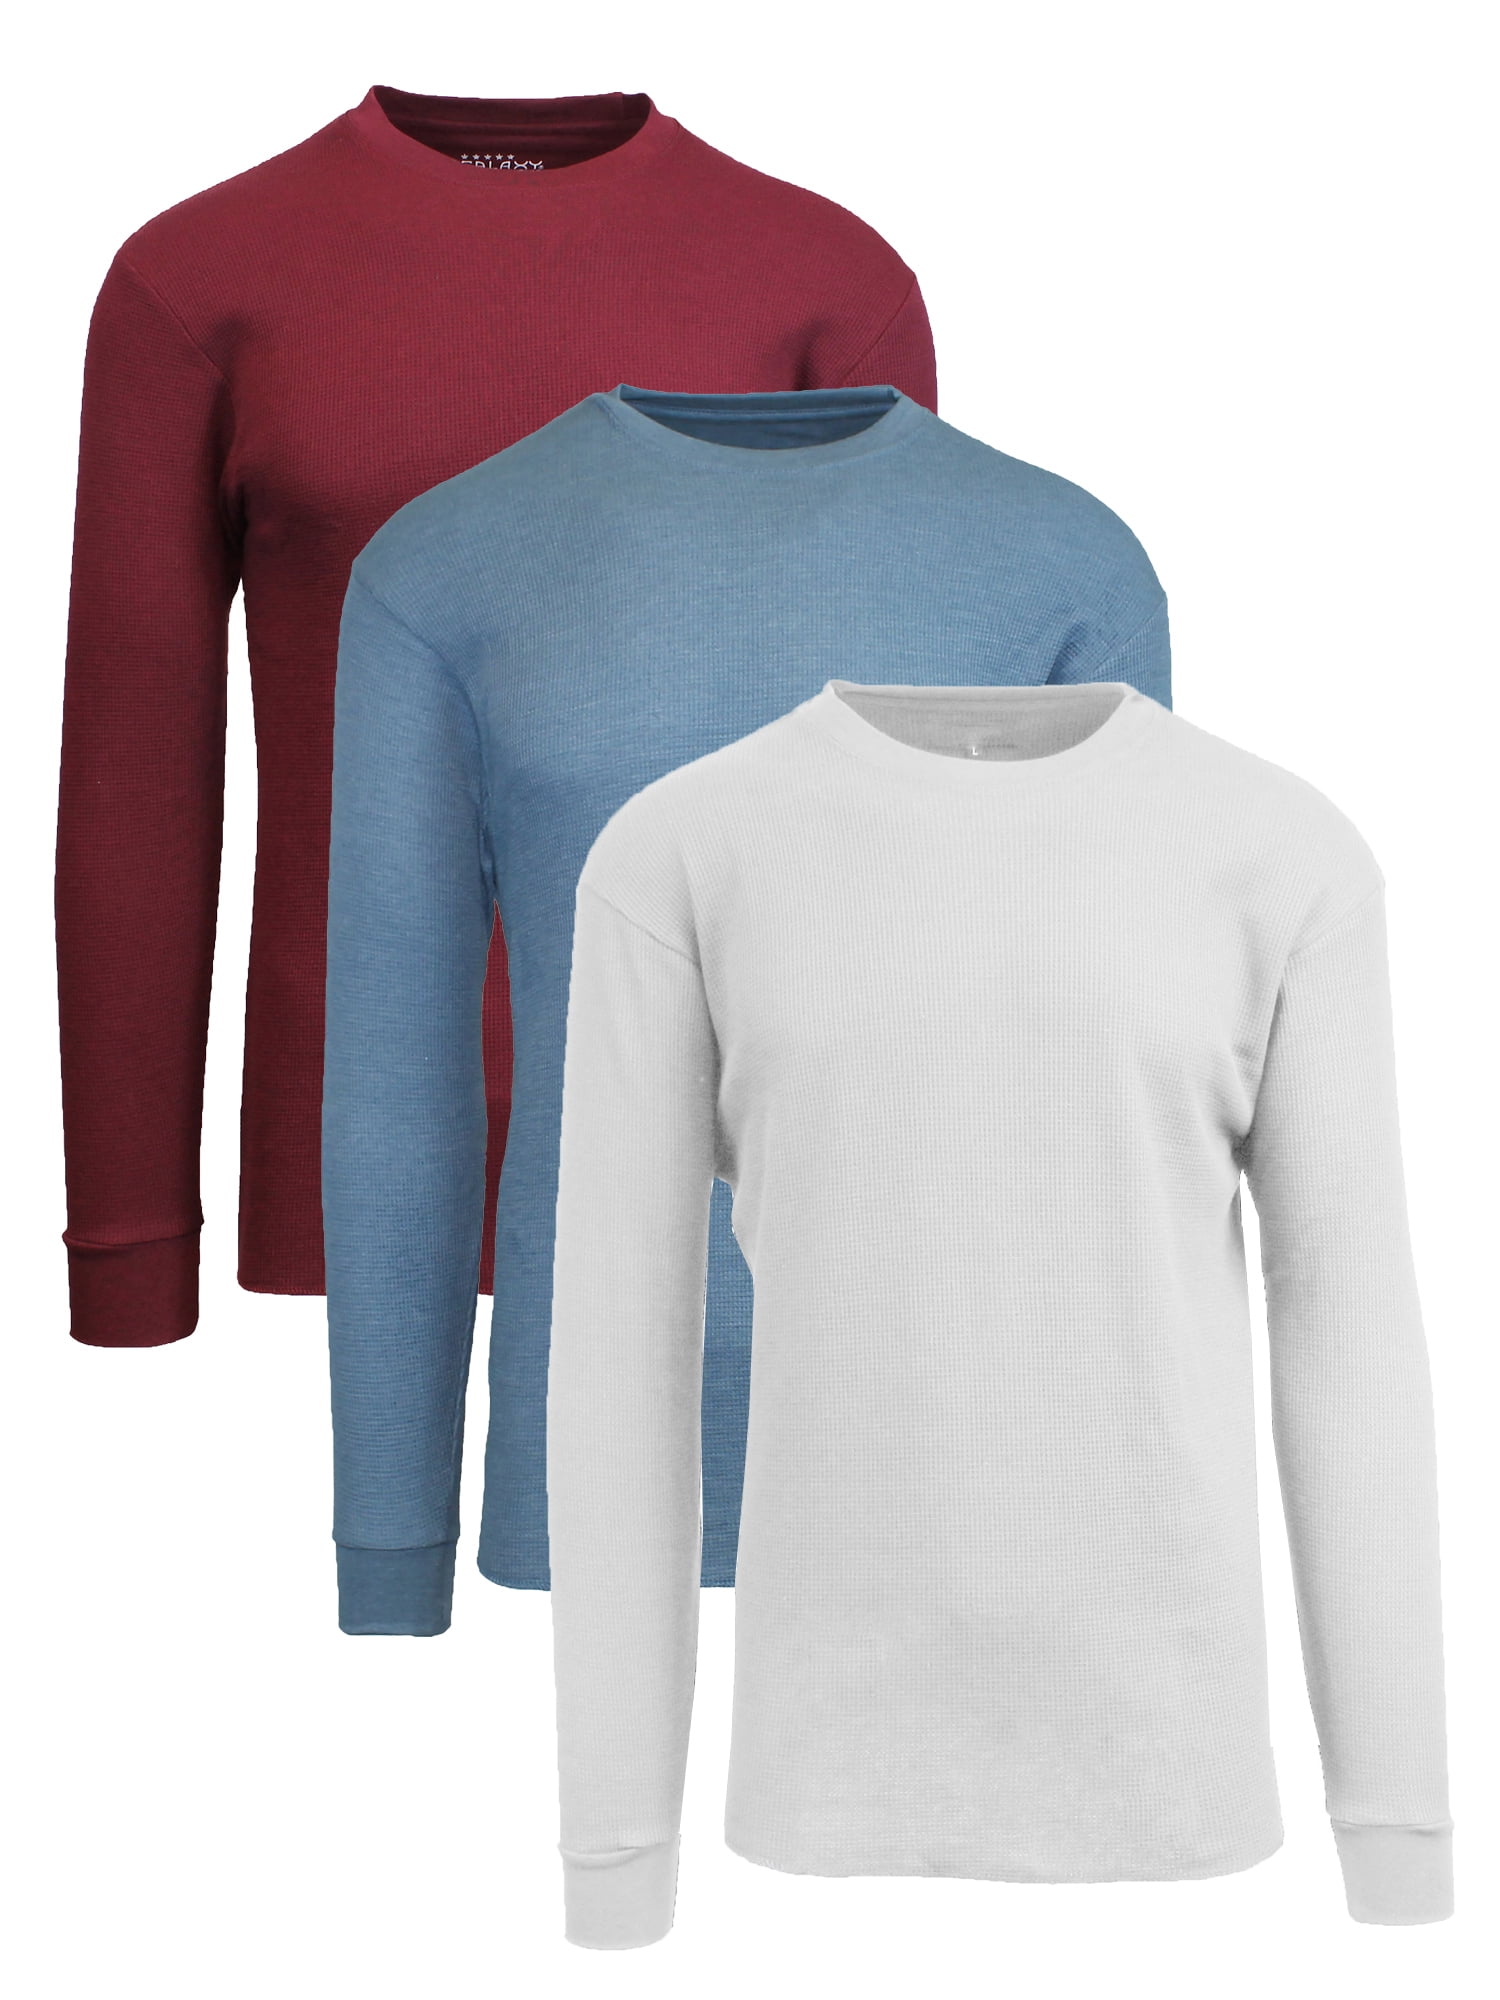 enkel ethiek dwaas Men's Long Sleeve Thermal Shirts (3-Pack) - Walmart.com